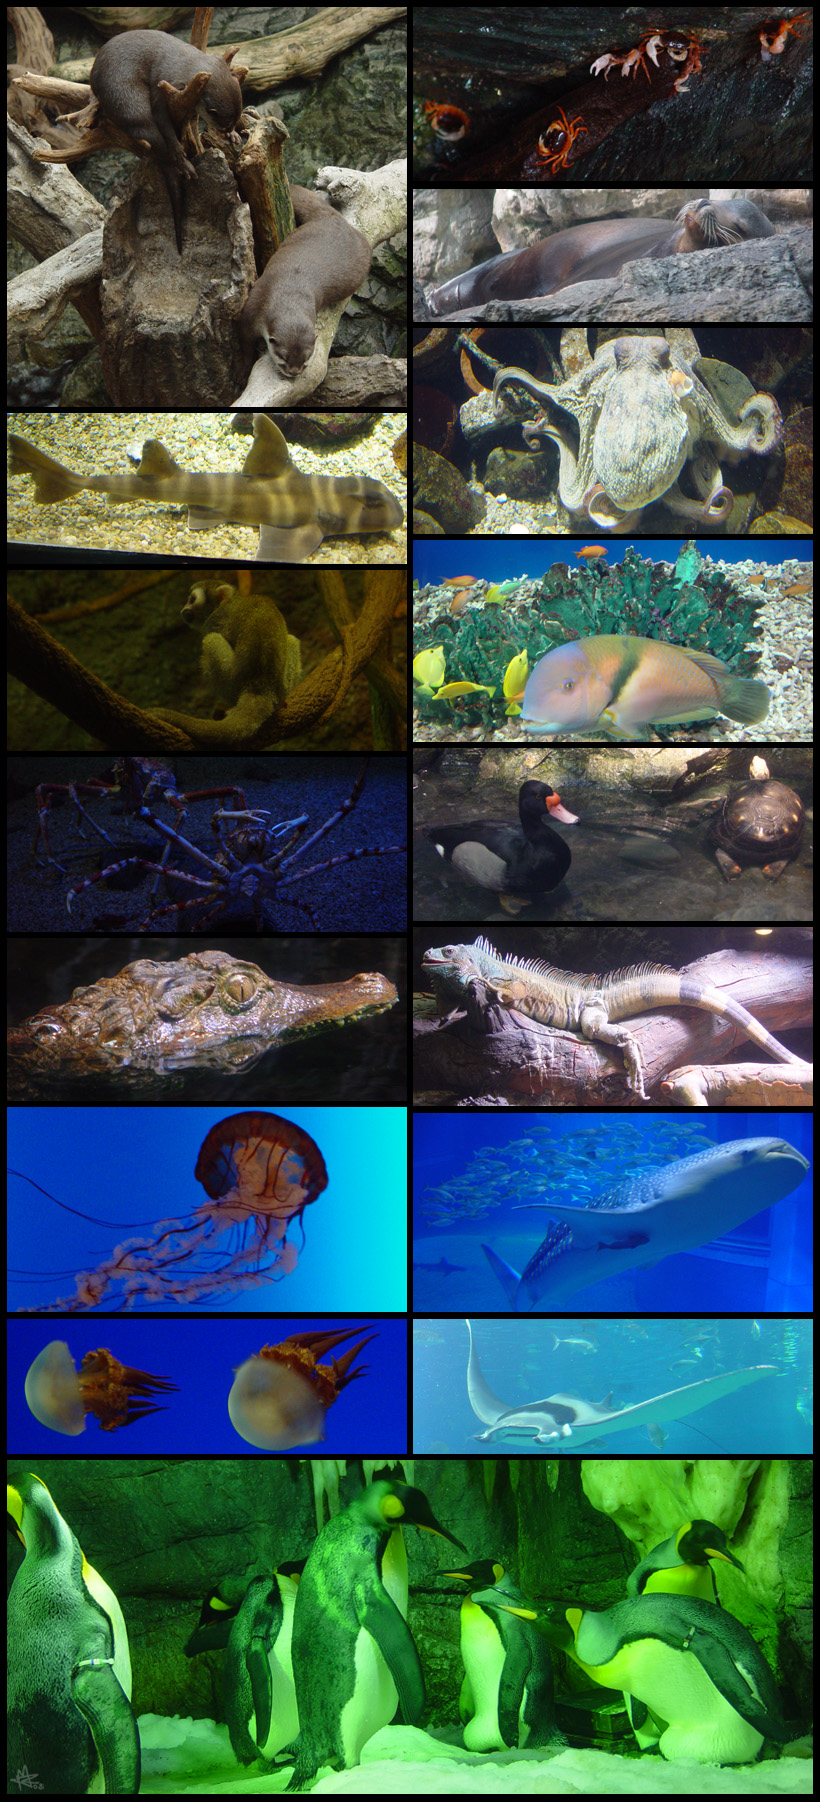 Japan - Osaka Aquarium